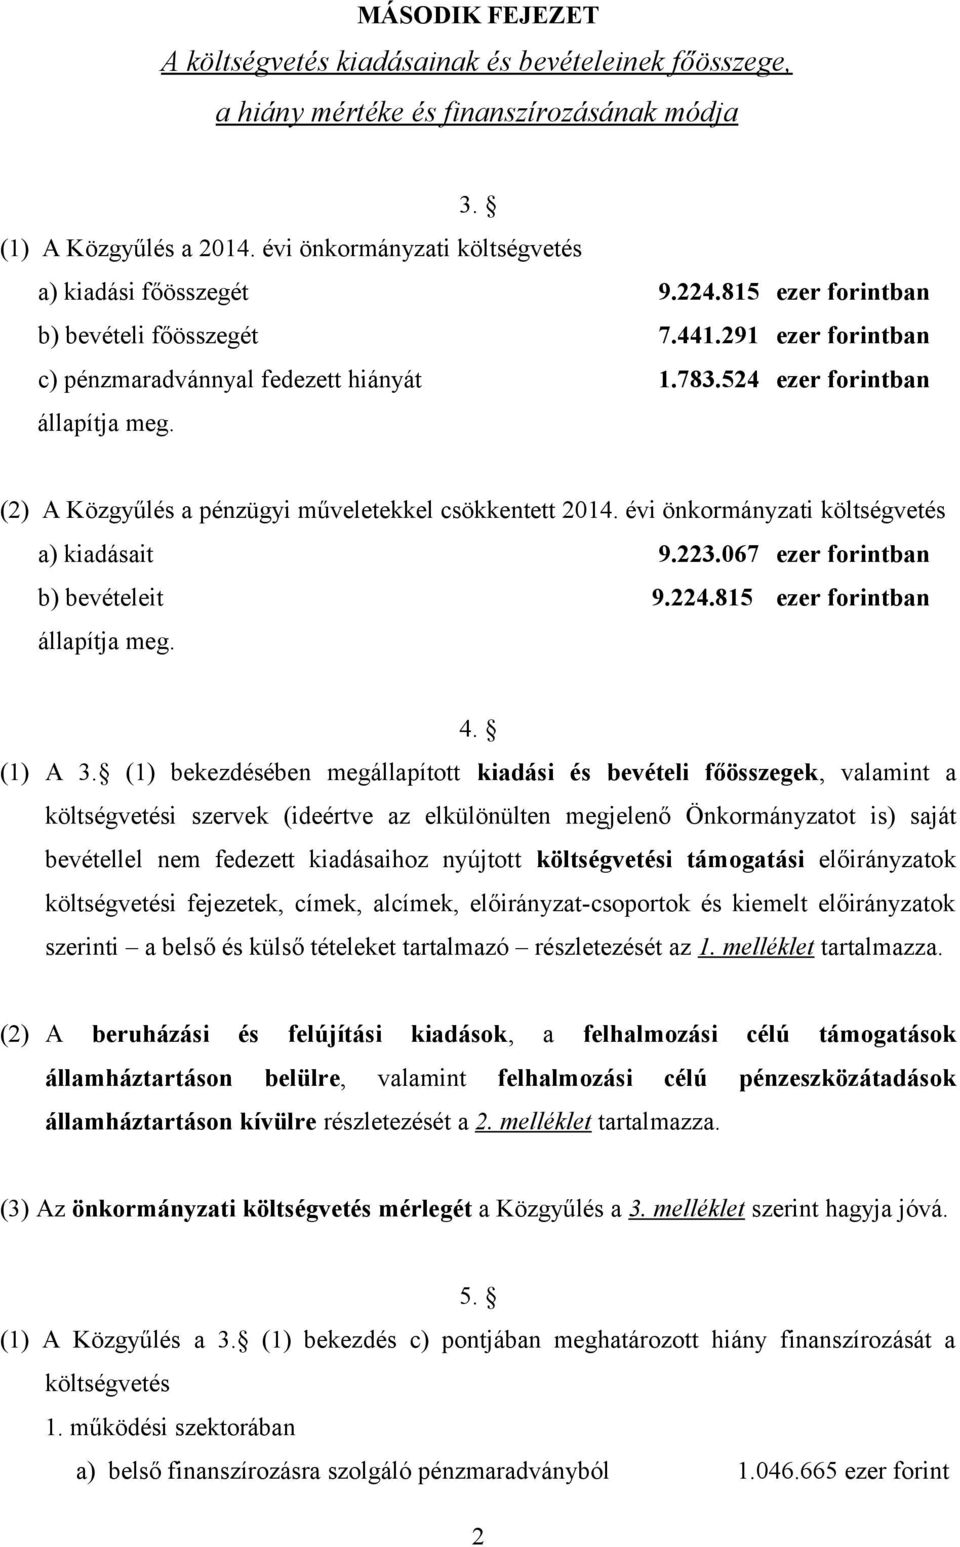 (2) A Közgyűlés a pénzügyi műveletekkel csökkentett 2014. évi önkormányzati költségvetés a) kiadásait 9.223.067 ezer forintban b) bevételeit 9.224.815 ezer forintban állapítja meg. 4. (1) A 3.